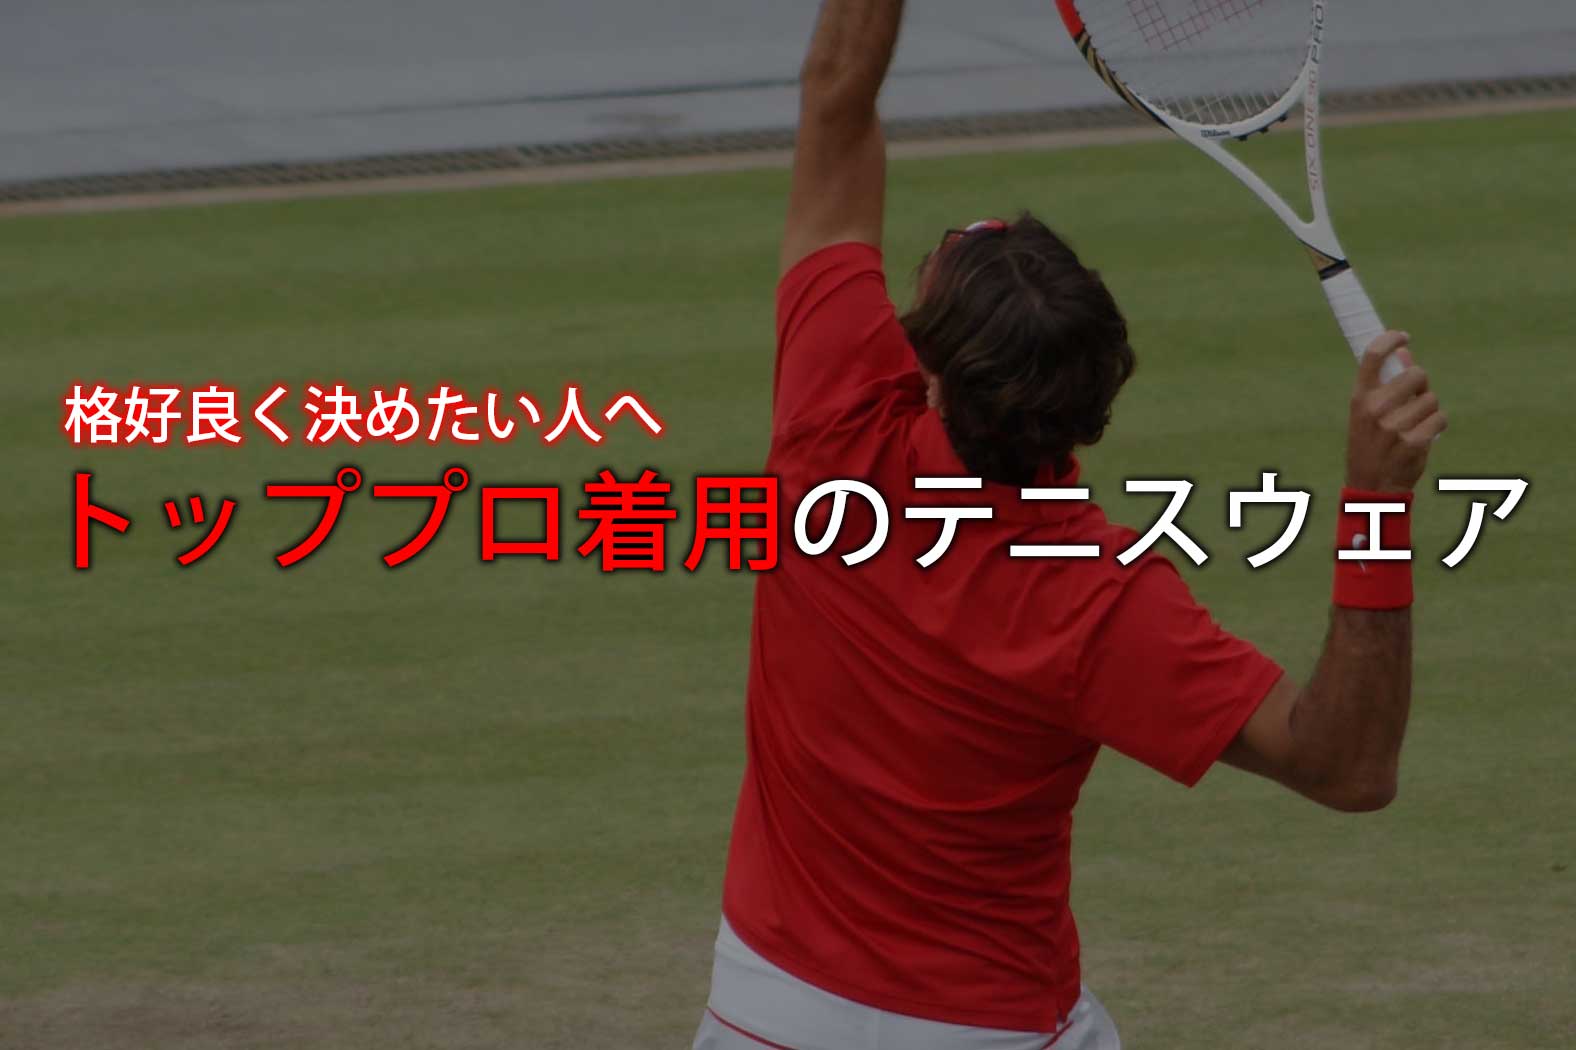 トッププロ着用のおすすめテニスウェア10選 男子編 ココロノ